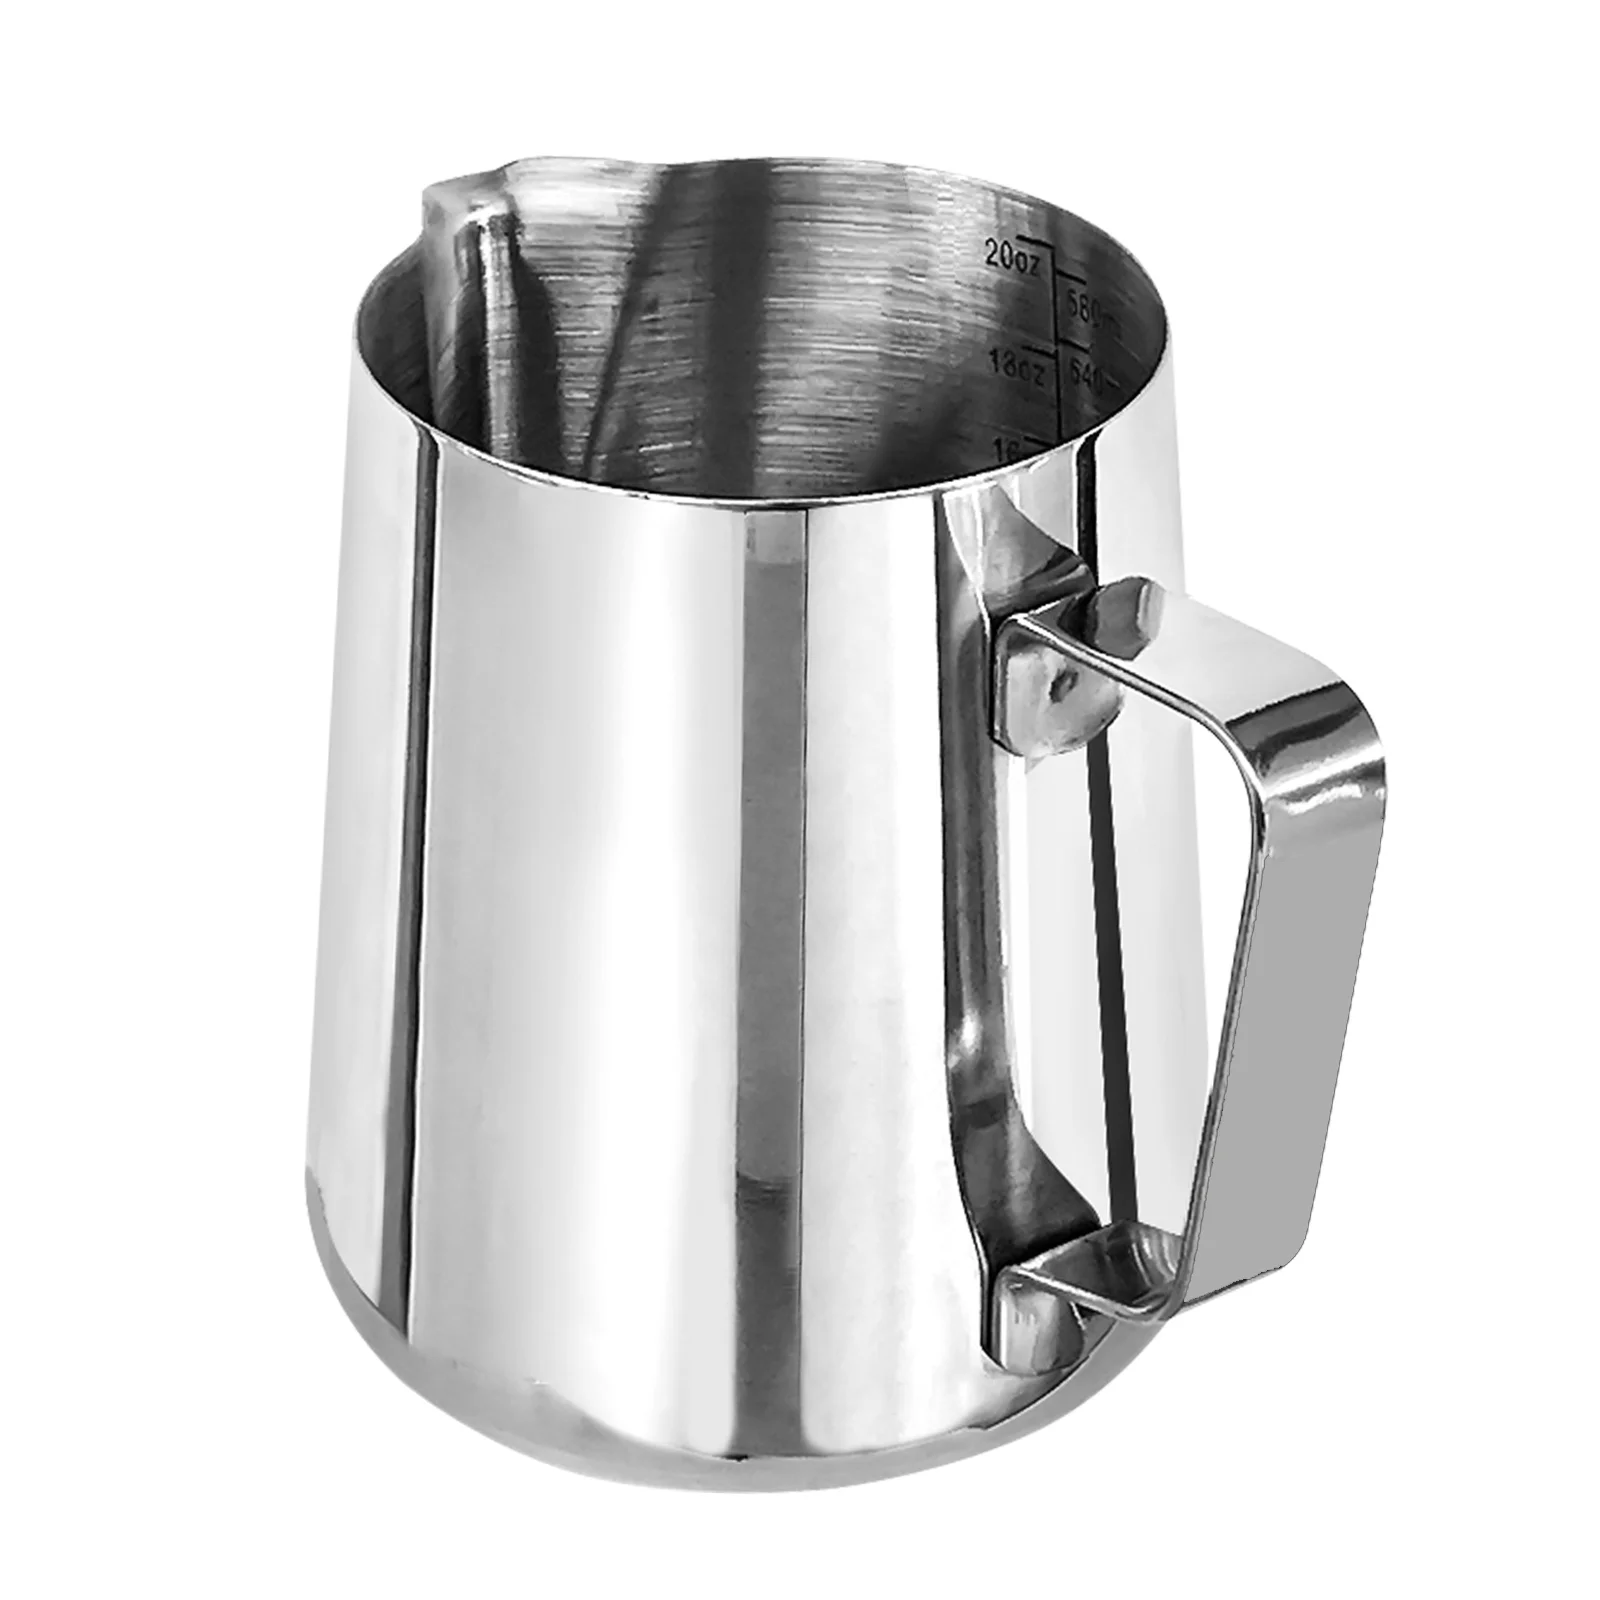 Stainless Steel Milk Frothing Jug - 350ml | EspressoWorks